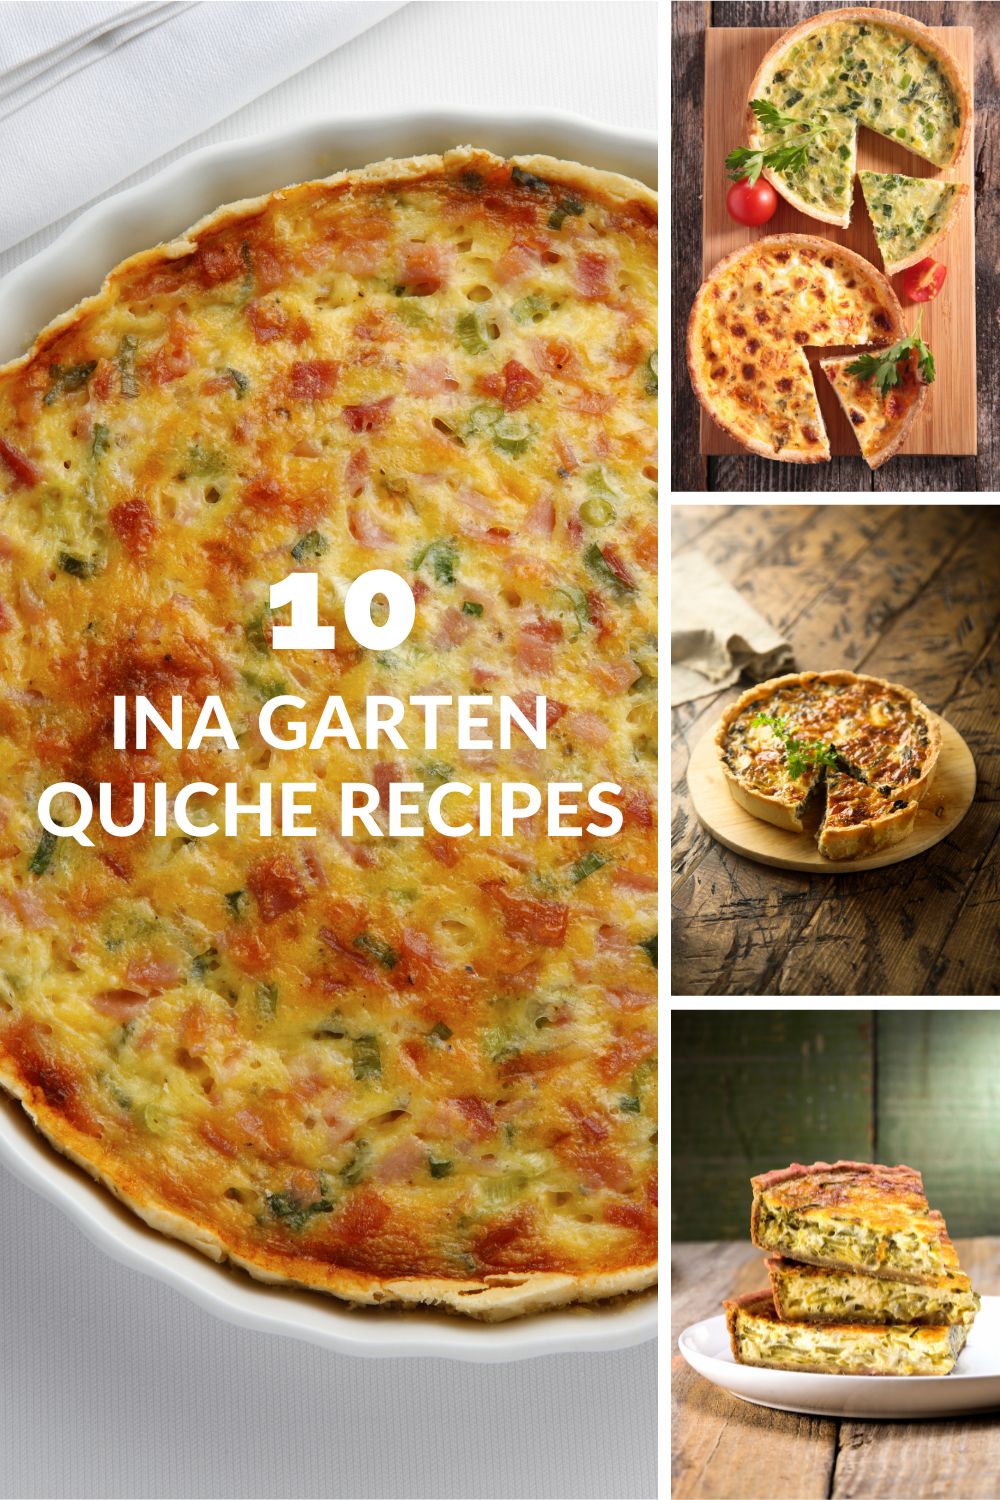 10 Ina Garten Quiche Recipes - Delish Sides